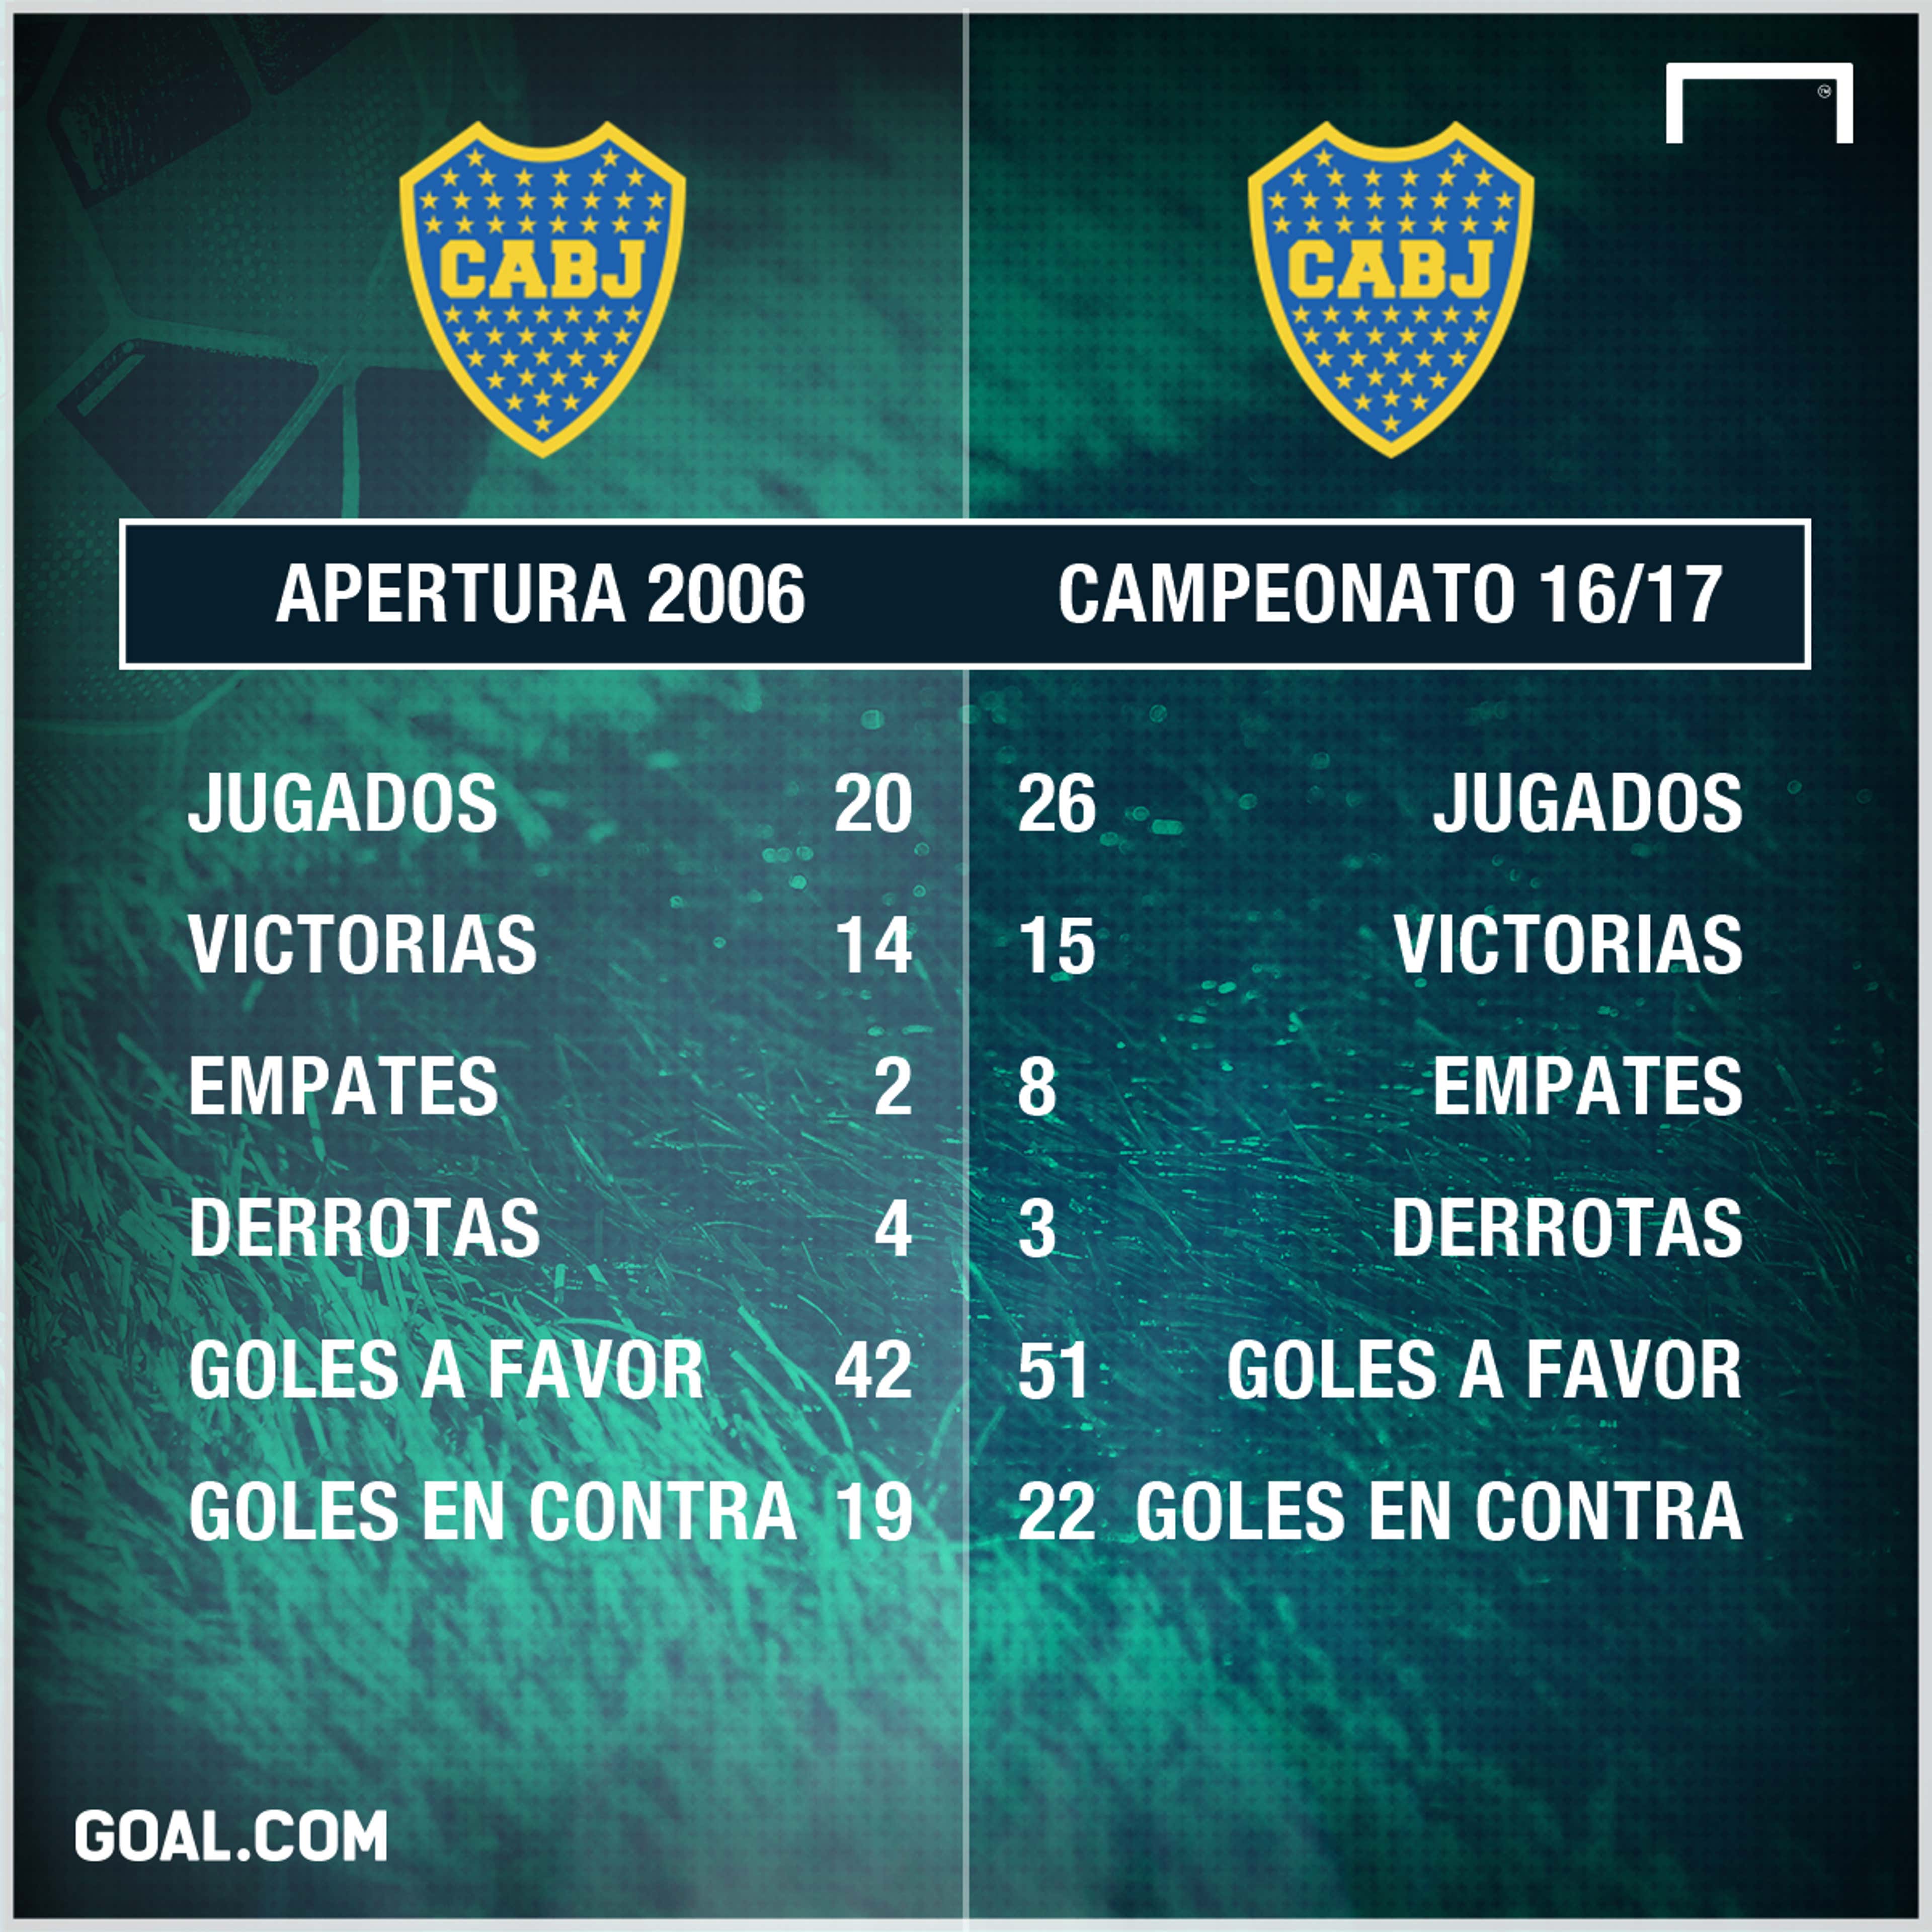 GFX Stats Boca 2006 vs 201617